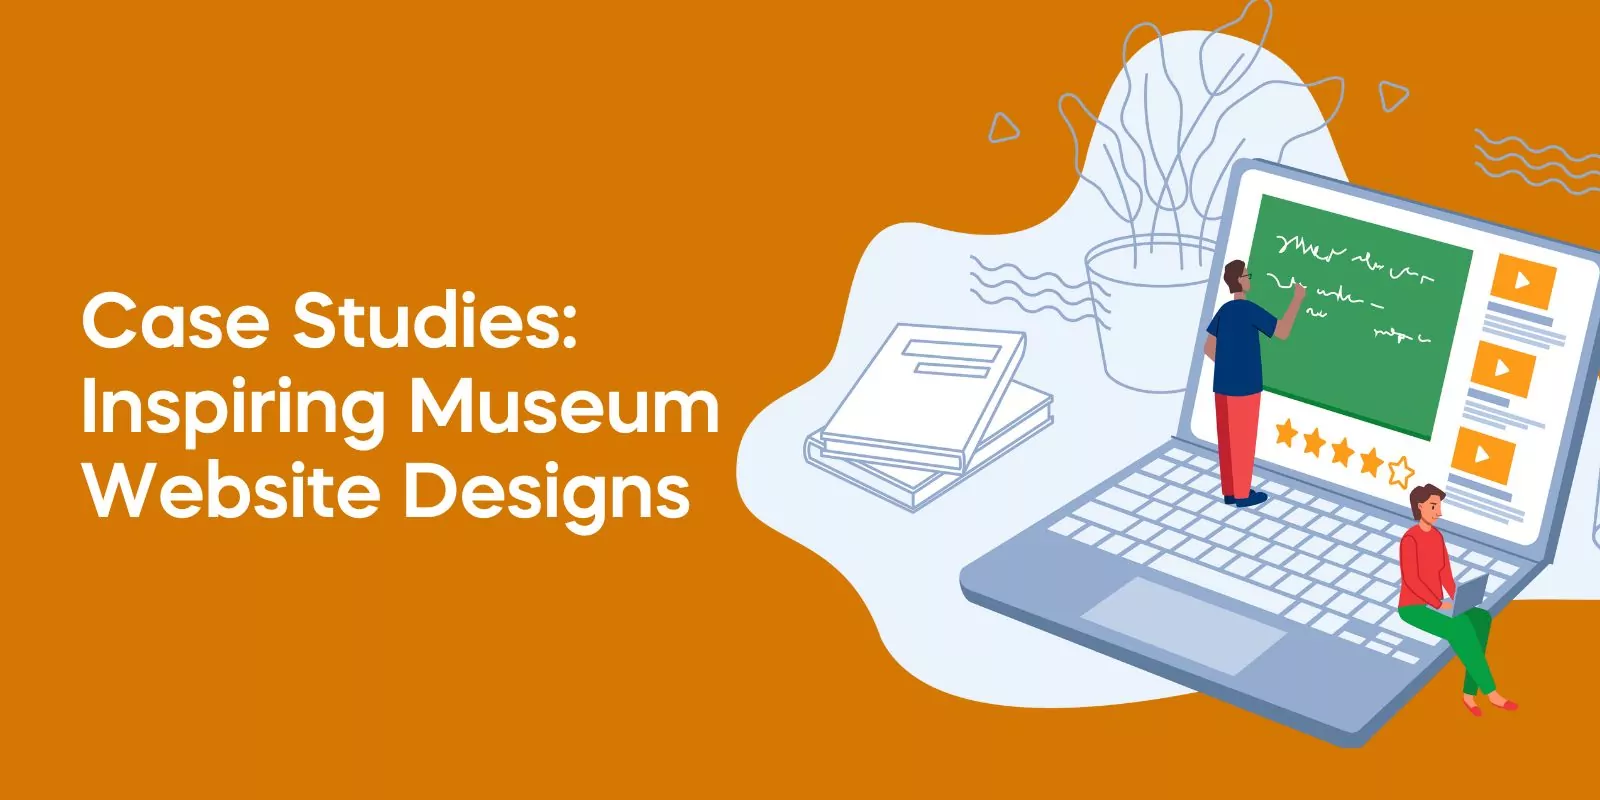 Case Studies: Inspiring Museum Website Designs